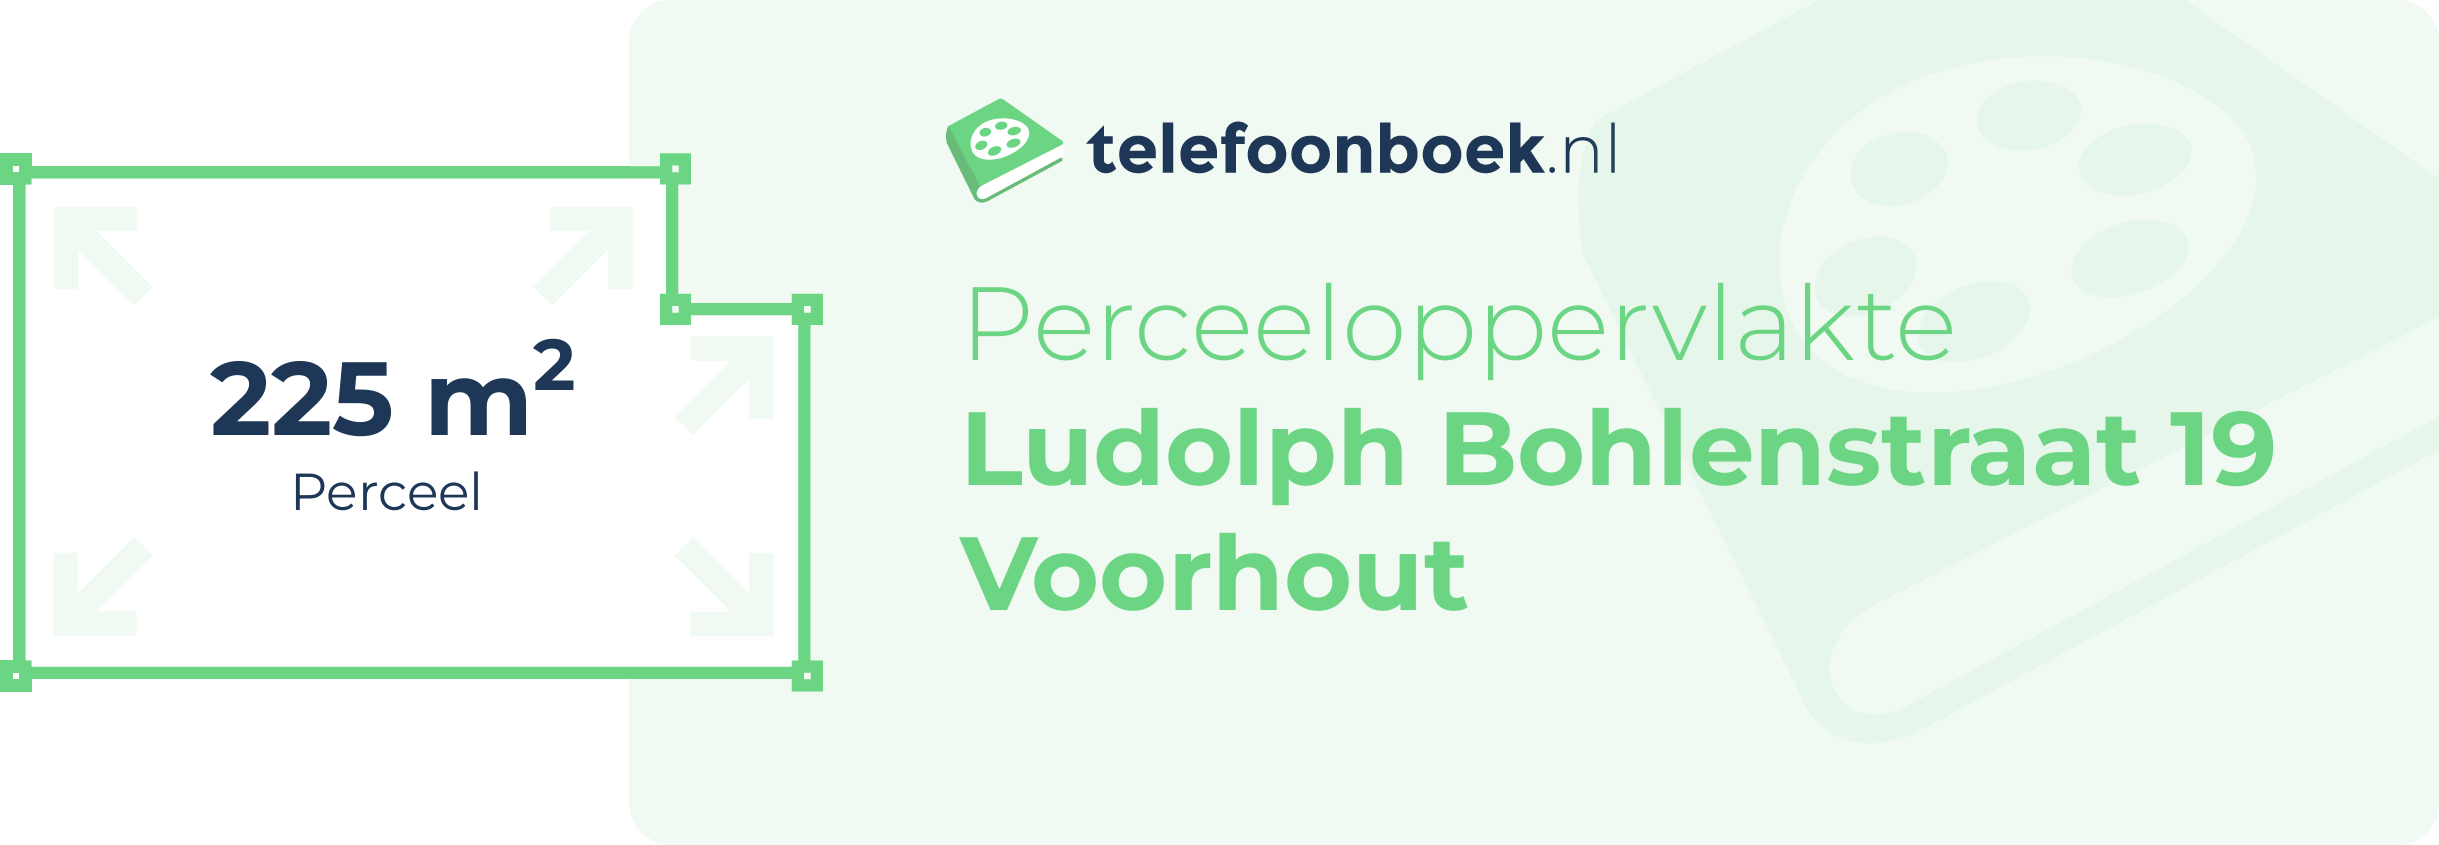 Perceeloppervlakte Ludolph Bohlenstraat 19 Voorhout